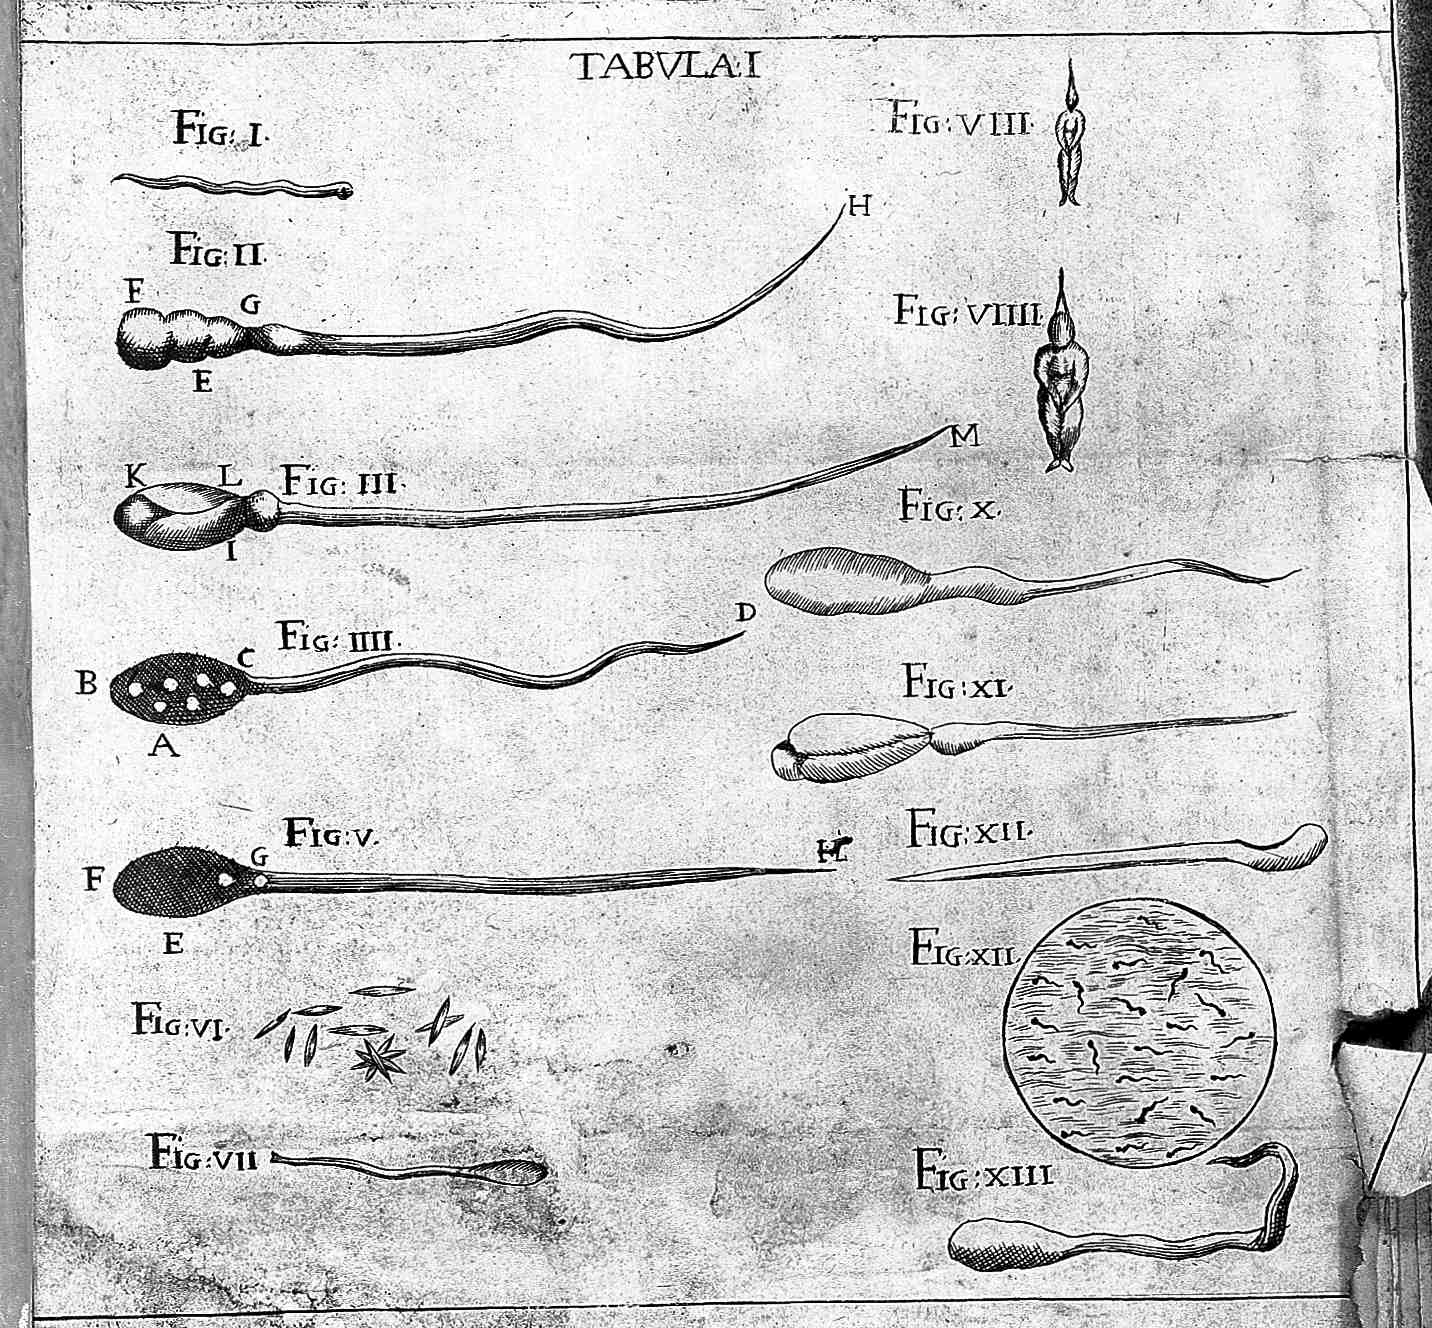 Figures of homunculi in semen.